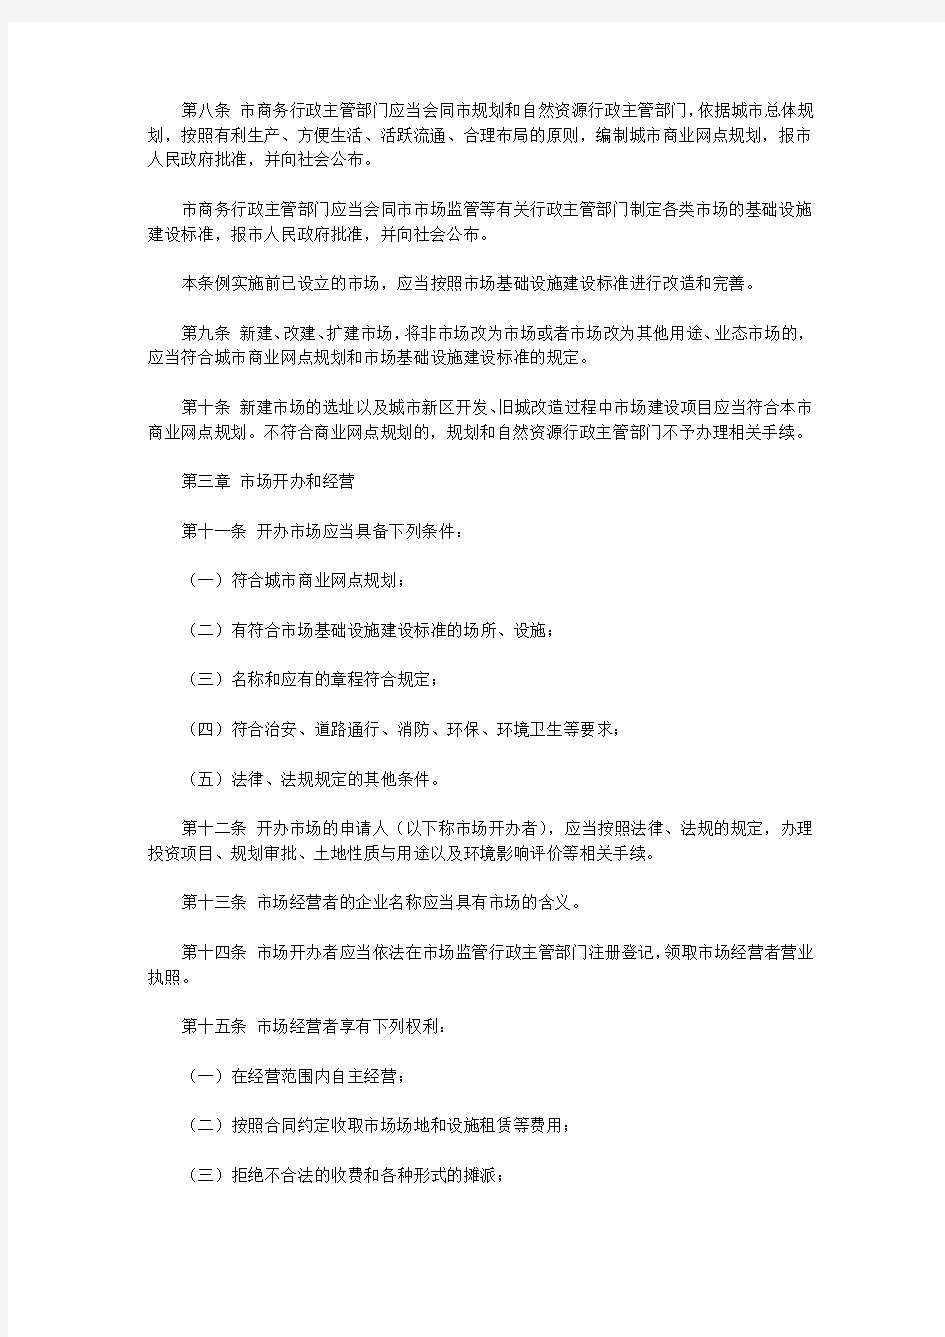 南京市商品交易市场管理条例(2011)